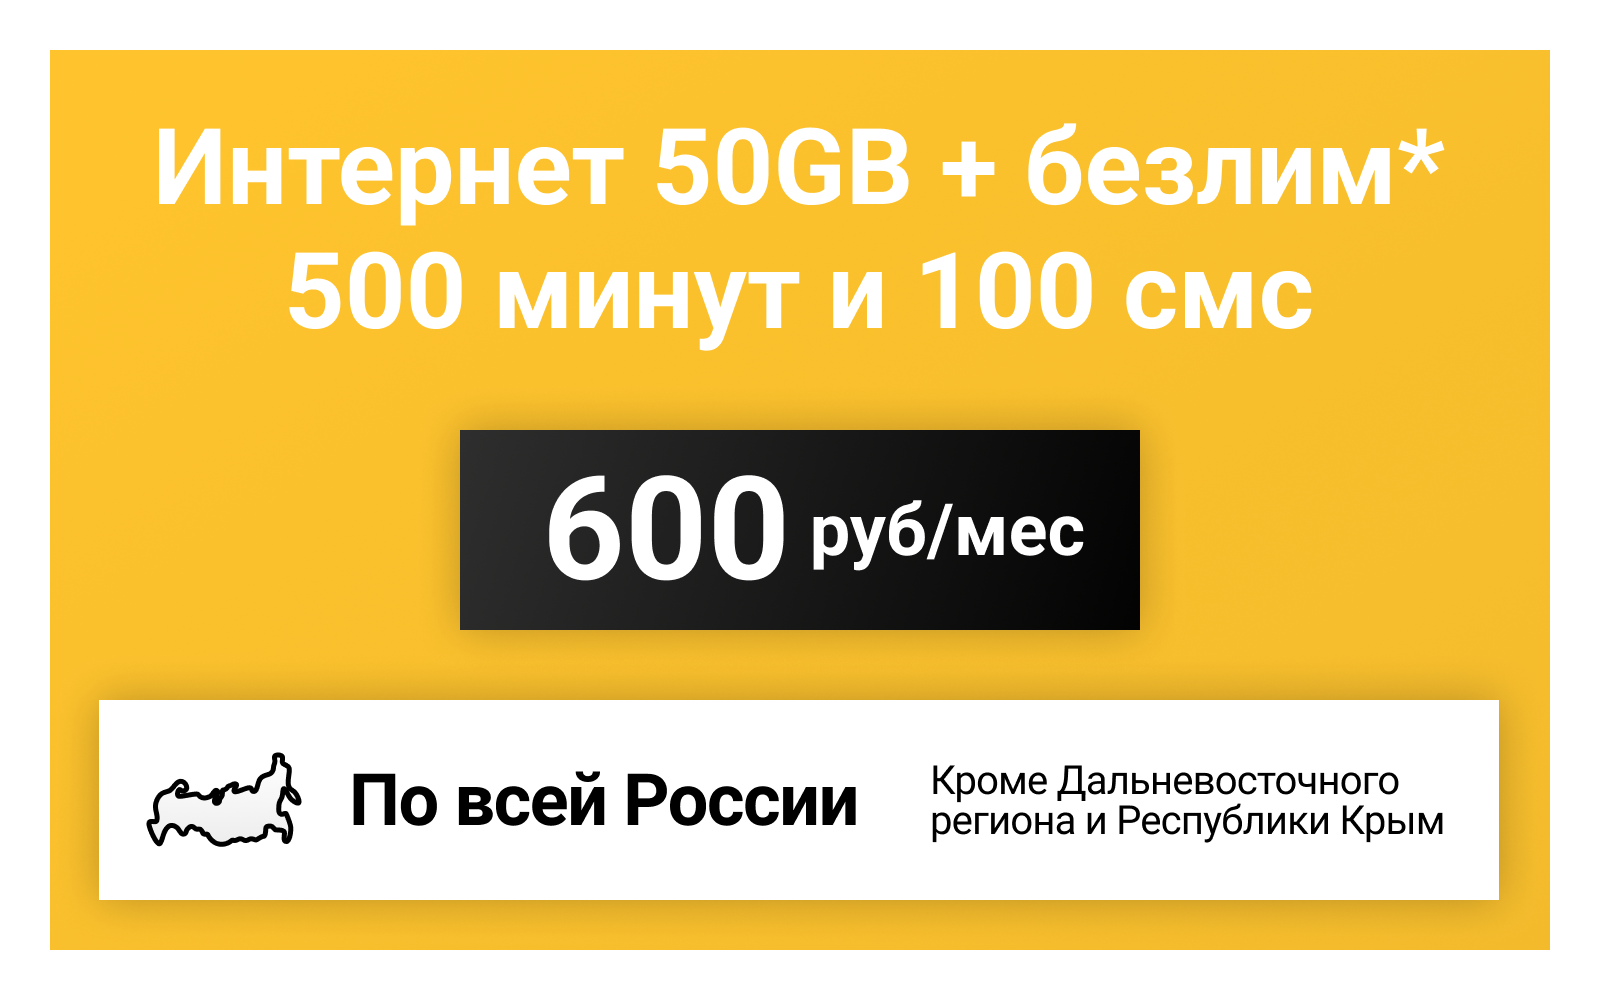 Сим-карта / 500 минут + 100 смс + 30GB + безлимит на мессенджеры - 500 р/мес тариф для смартфона (Вся Россия)